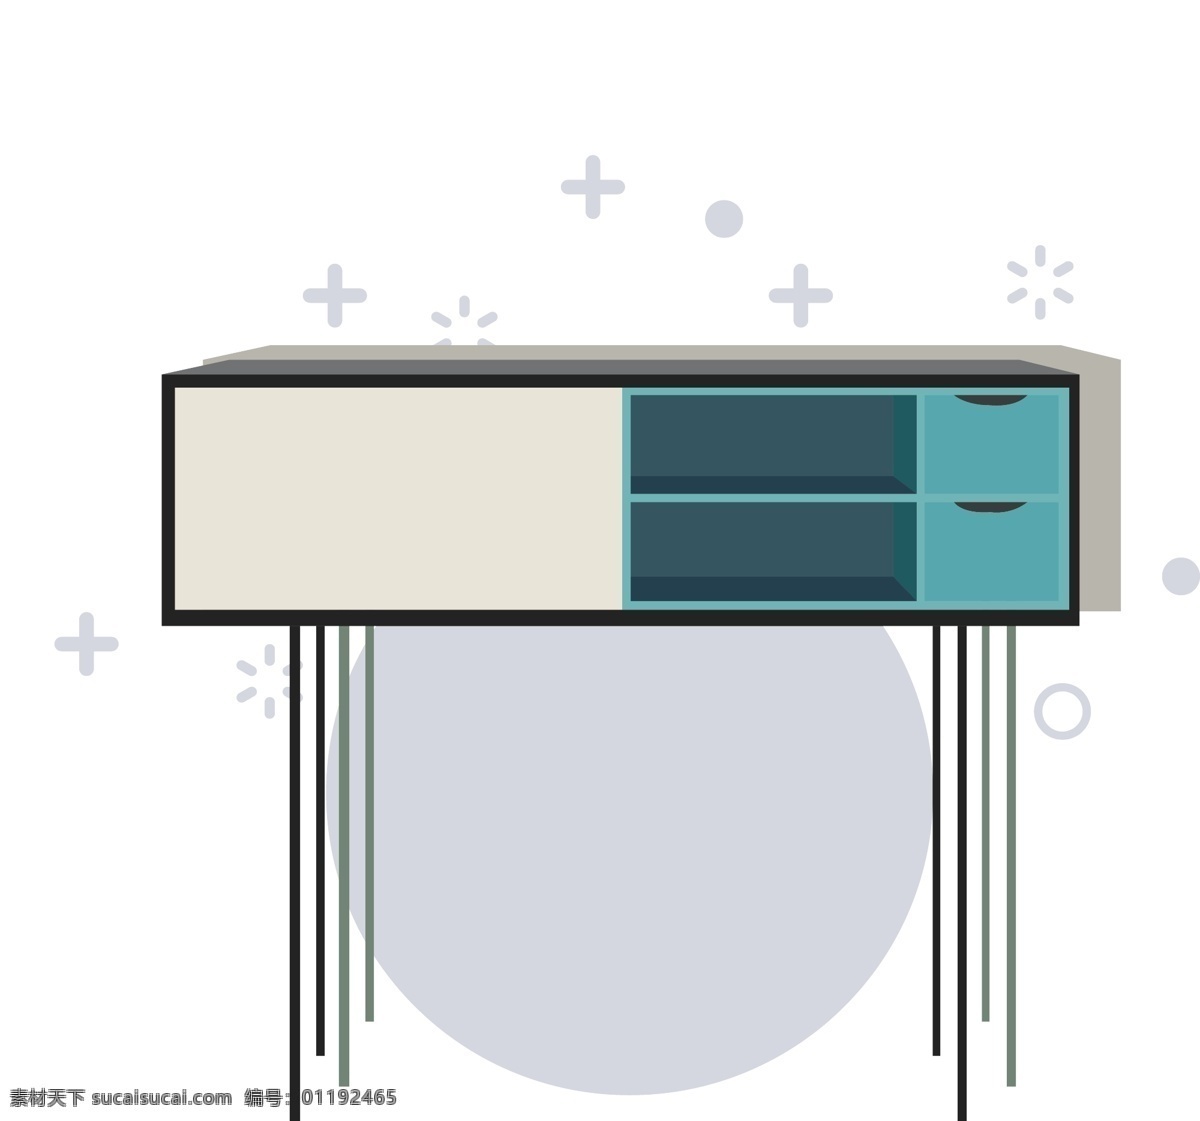 简约 卡通 家居 家具 图形 元素 桌子 家居用品 柜子 收纳 生活用品 现代